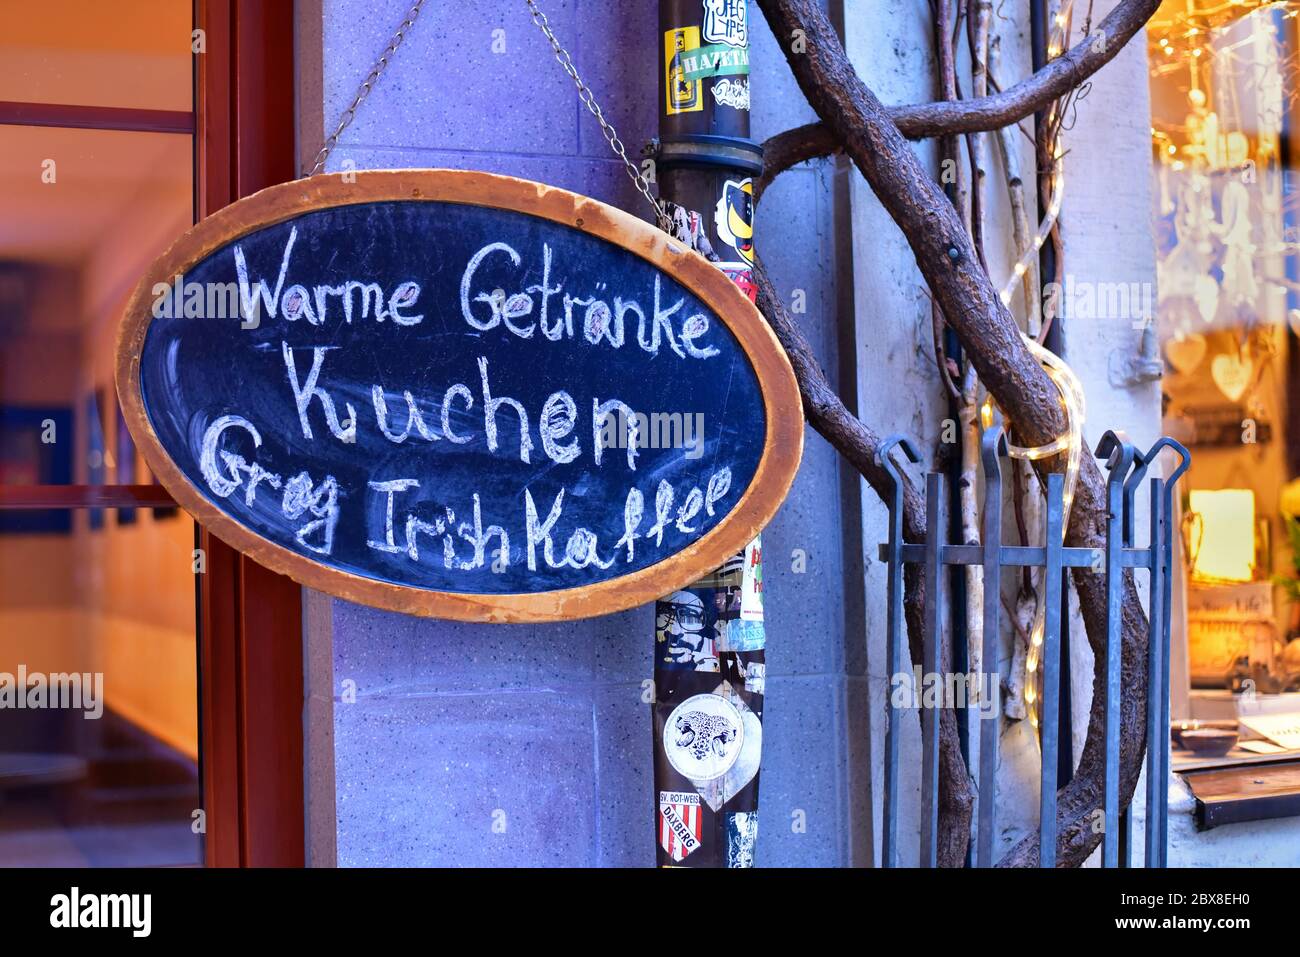 La lavagna si trova di fronte a un ristorante nella città vecchia di Düsseldorf, dove si dice "Warme Getränke" (bevande calde), "Kuchen" (torta), "Grog" e "Irish Coffee". Foto Stock